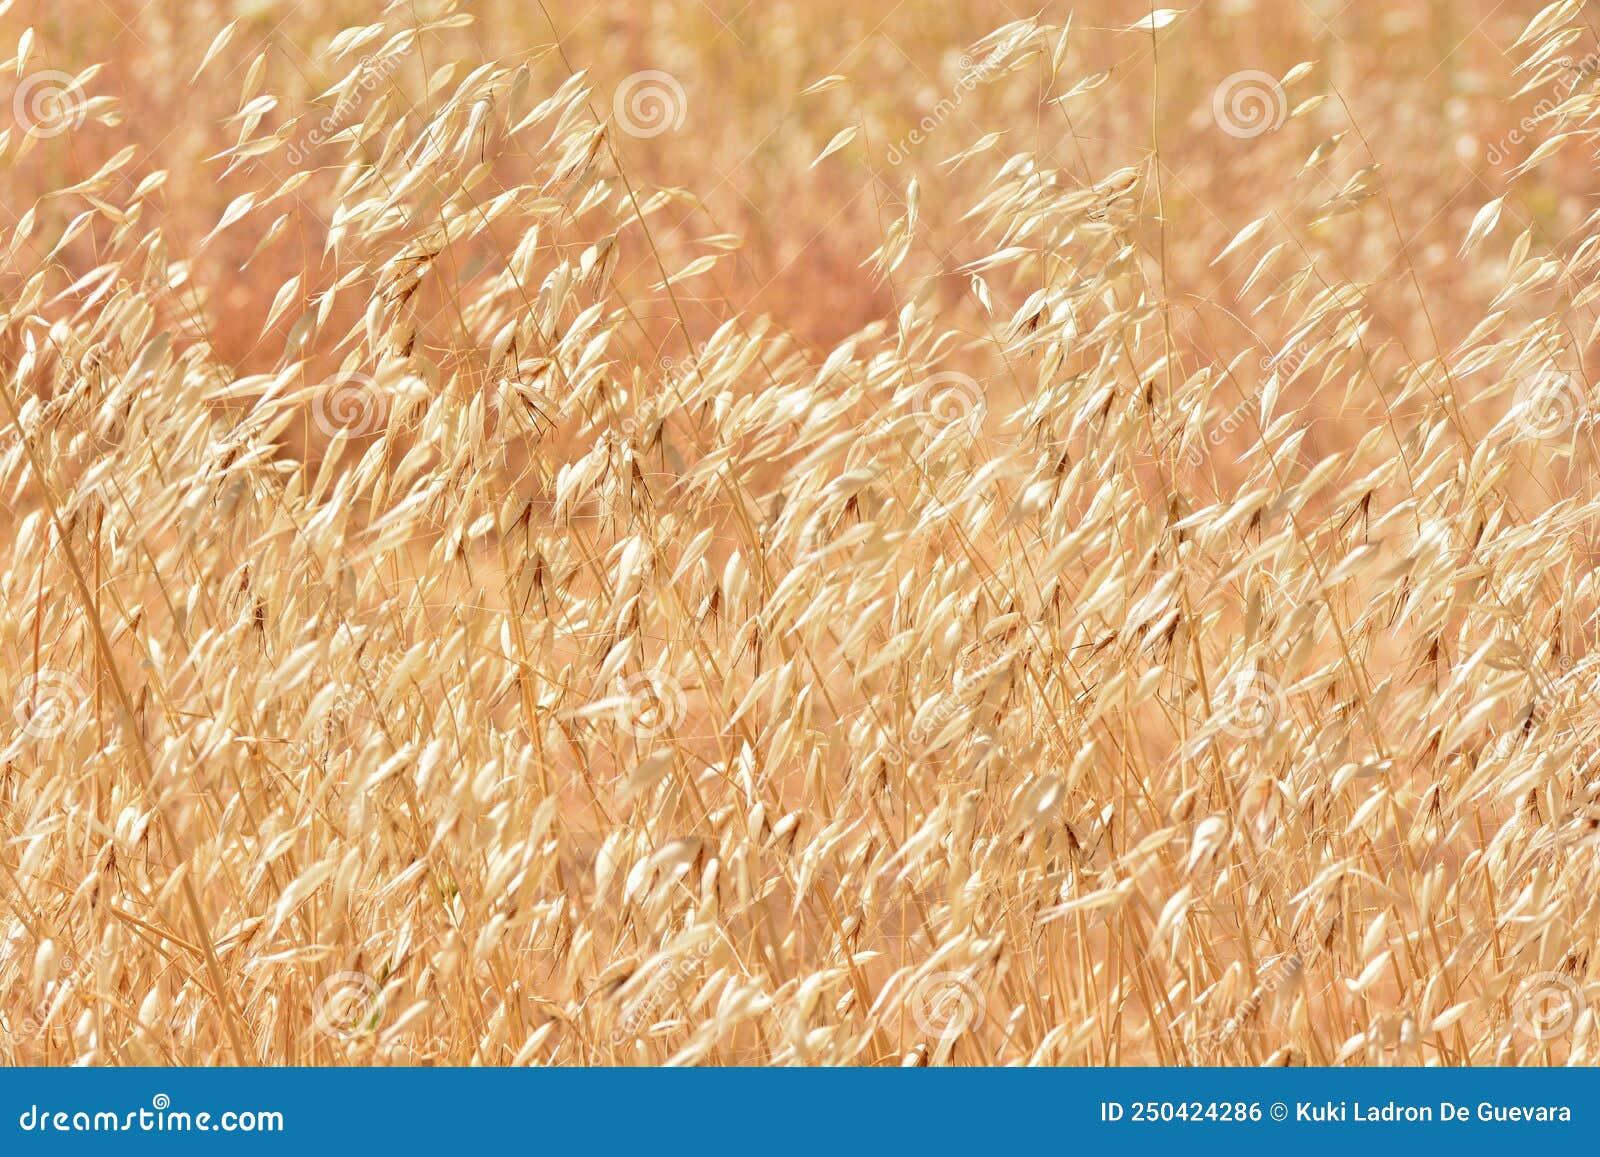 field of dry wild oats in summer